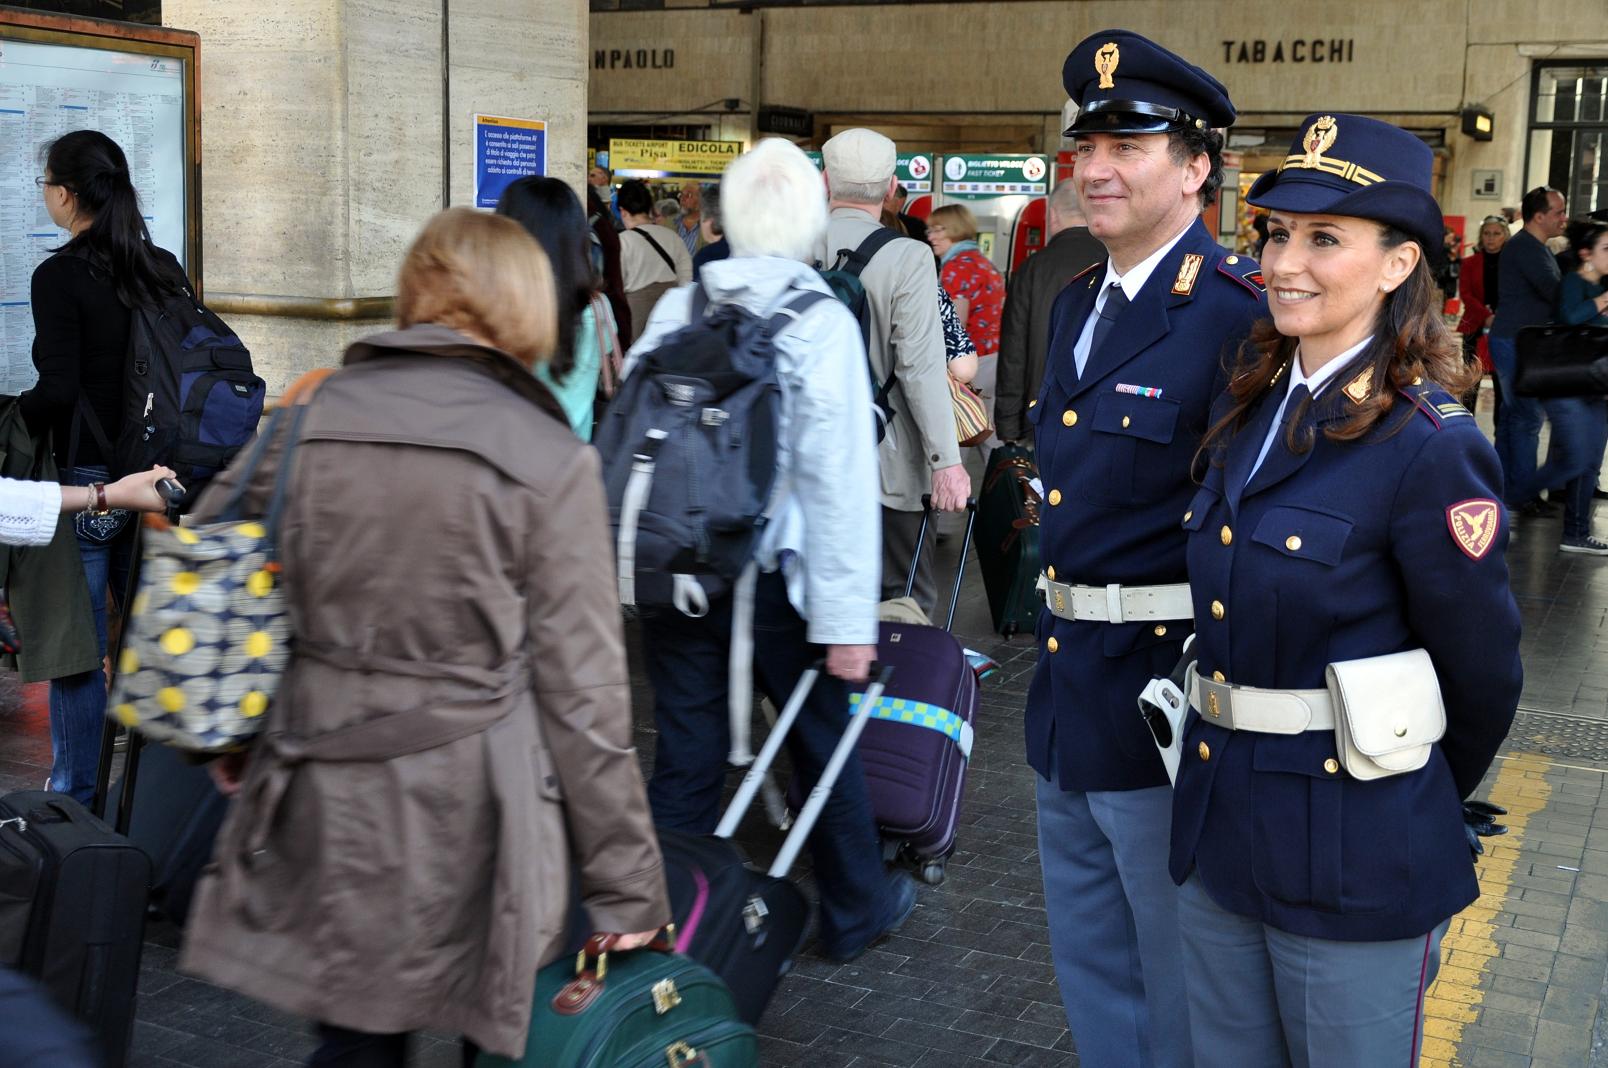 La Polfer di Firenze veglia sulla sicurezza dei viaggiatori